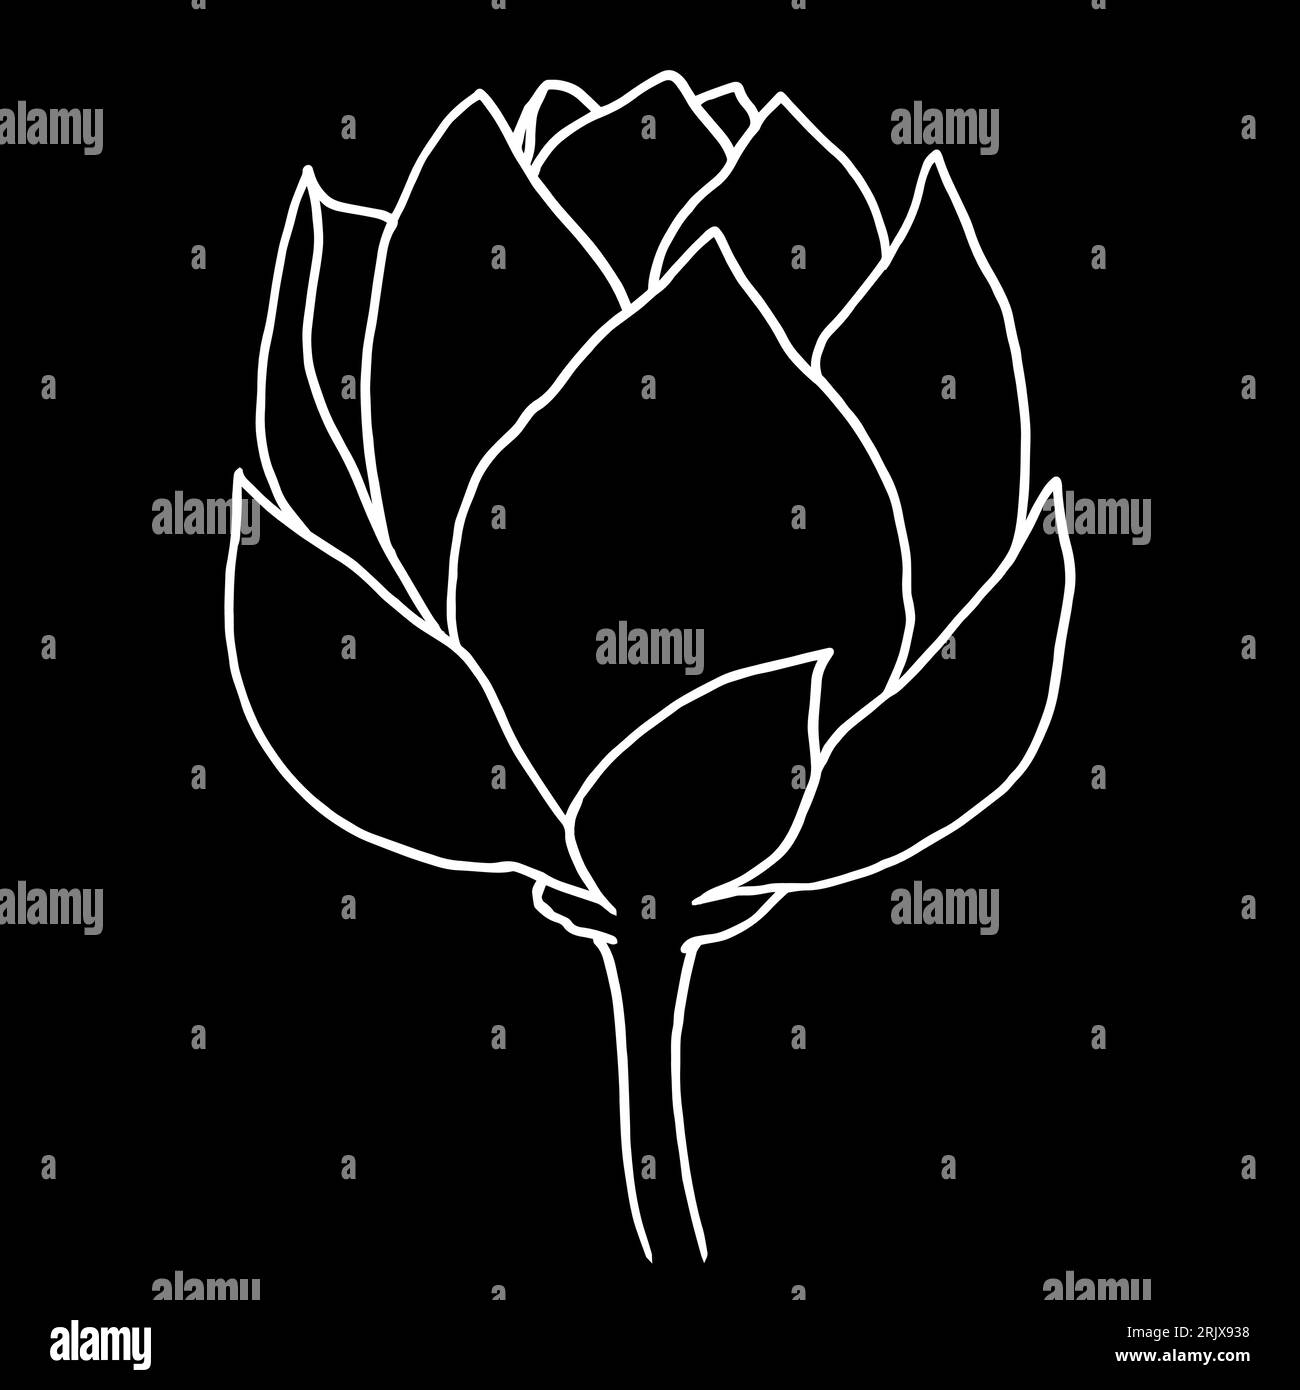 Illustrazione grafica grafica vettoriale con linea nera di fiori di loto disegnati a mano. Disegno floreale con contorno bianco per logo, tatuaggio, design della confezione, composizioni. Acqua Illustrazione Vettoriale